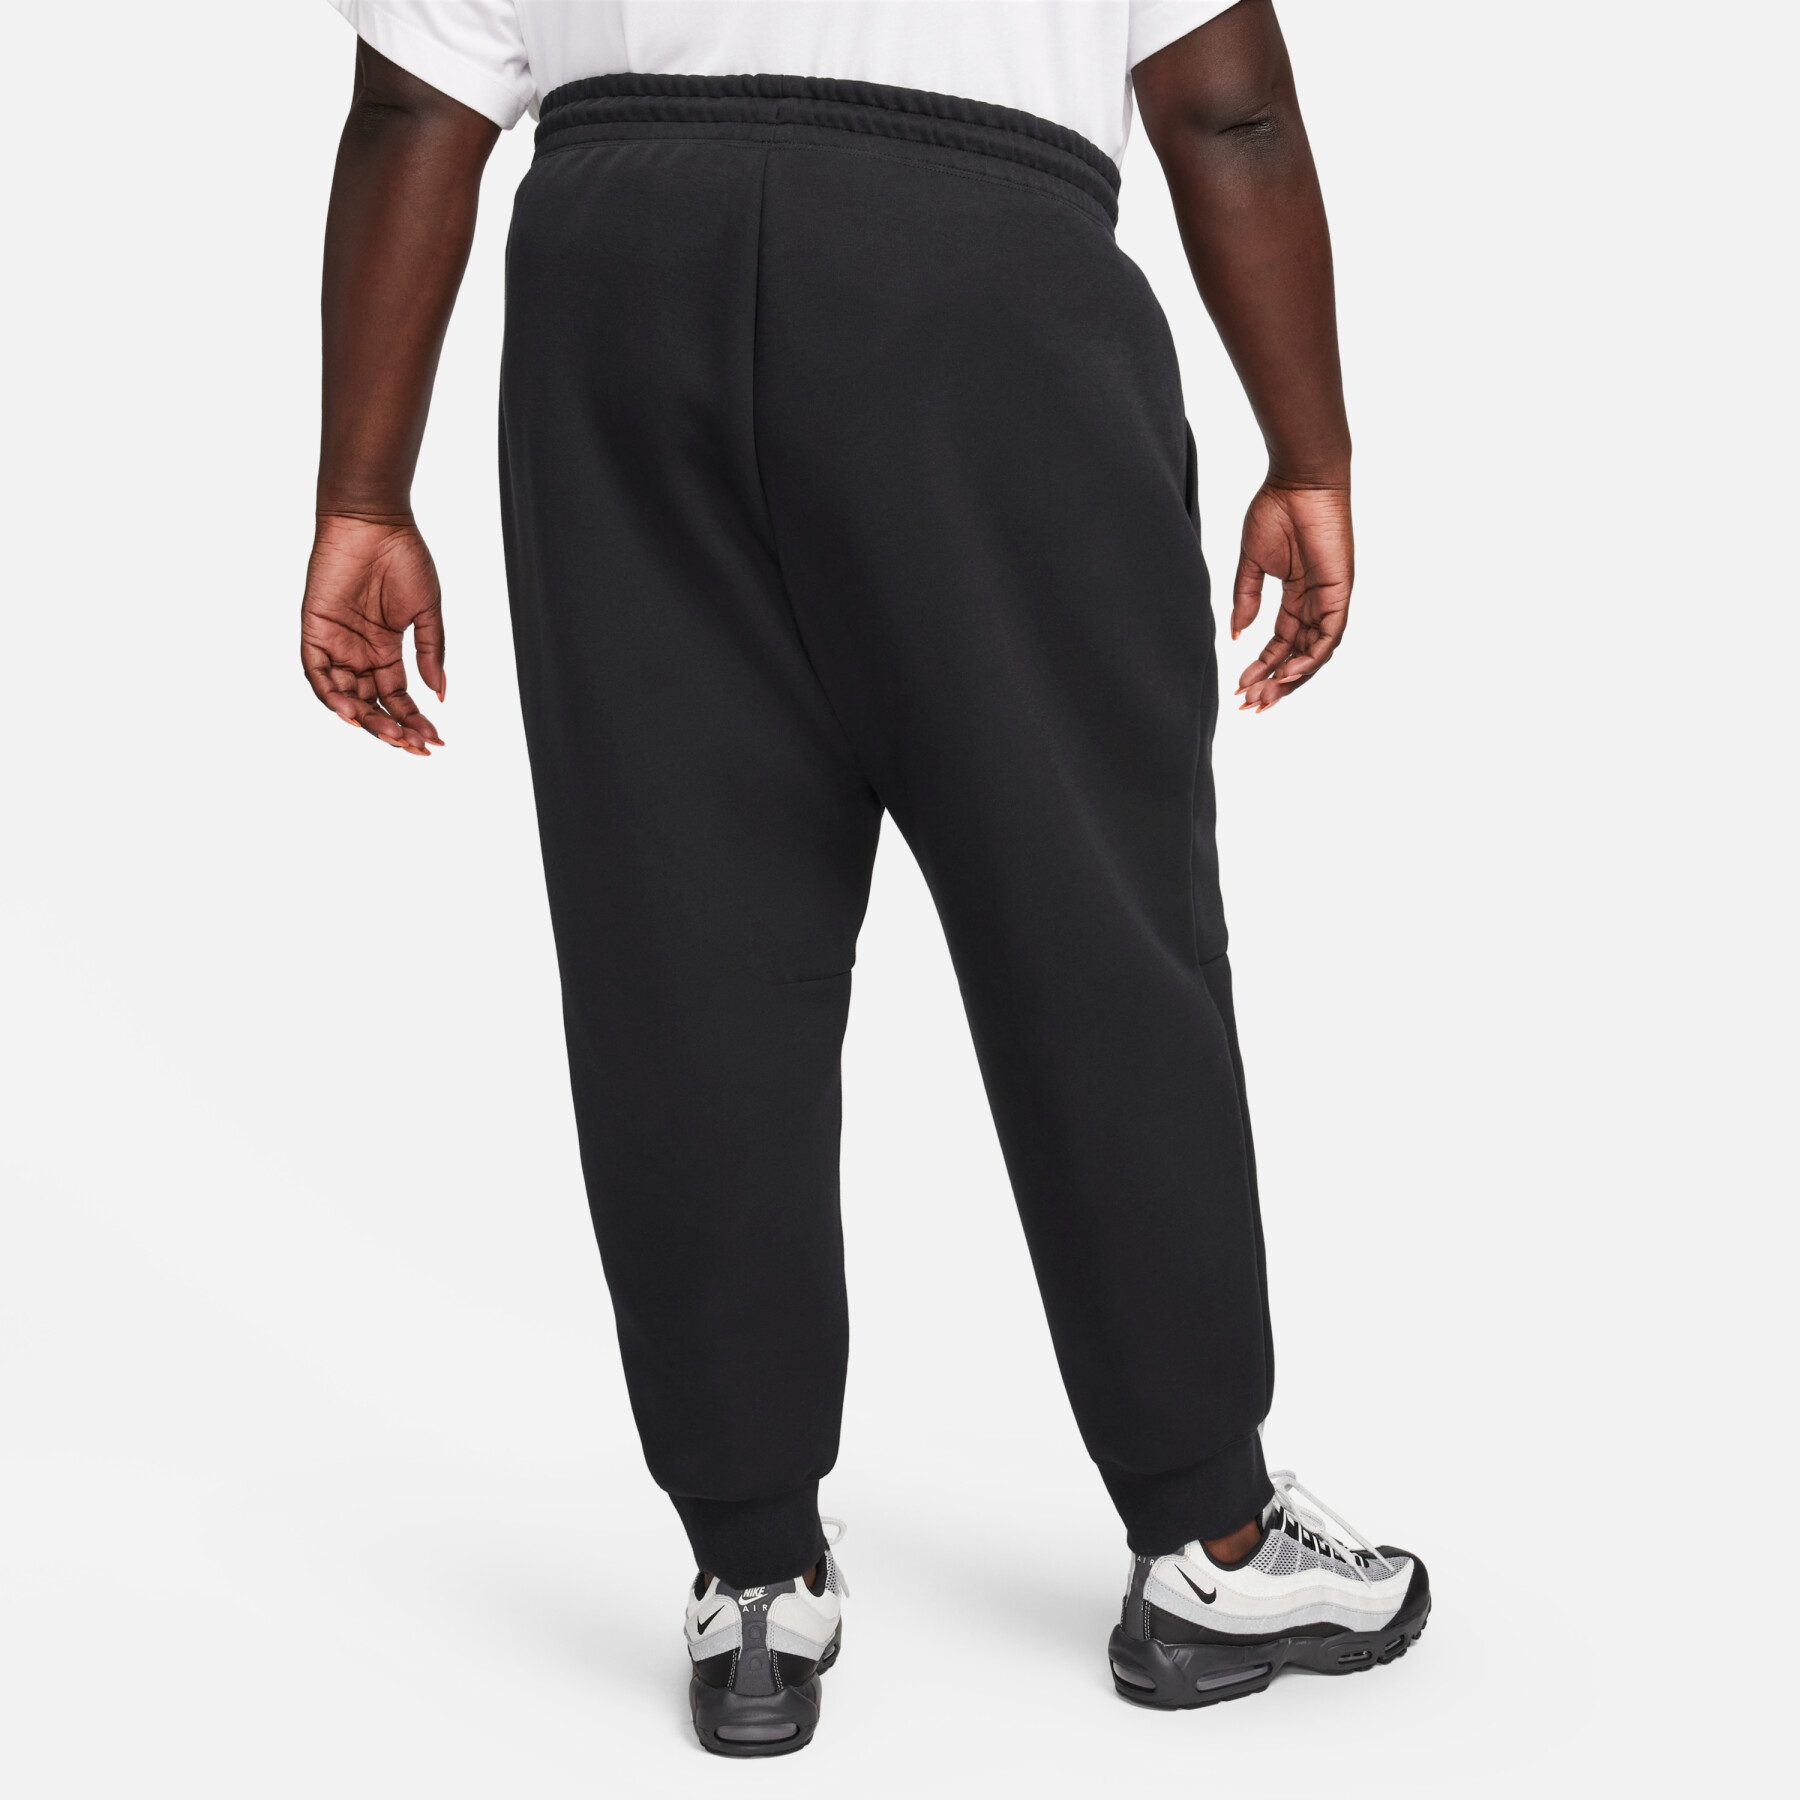 Women's jogging suit Nike Tech Fleece